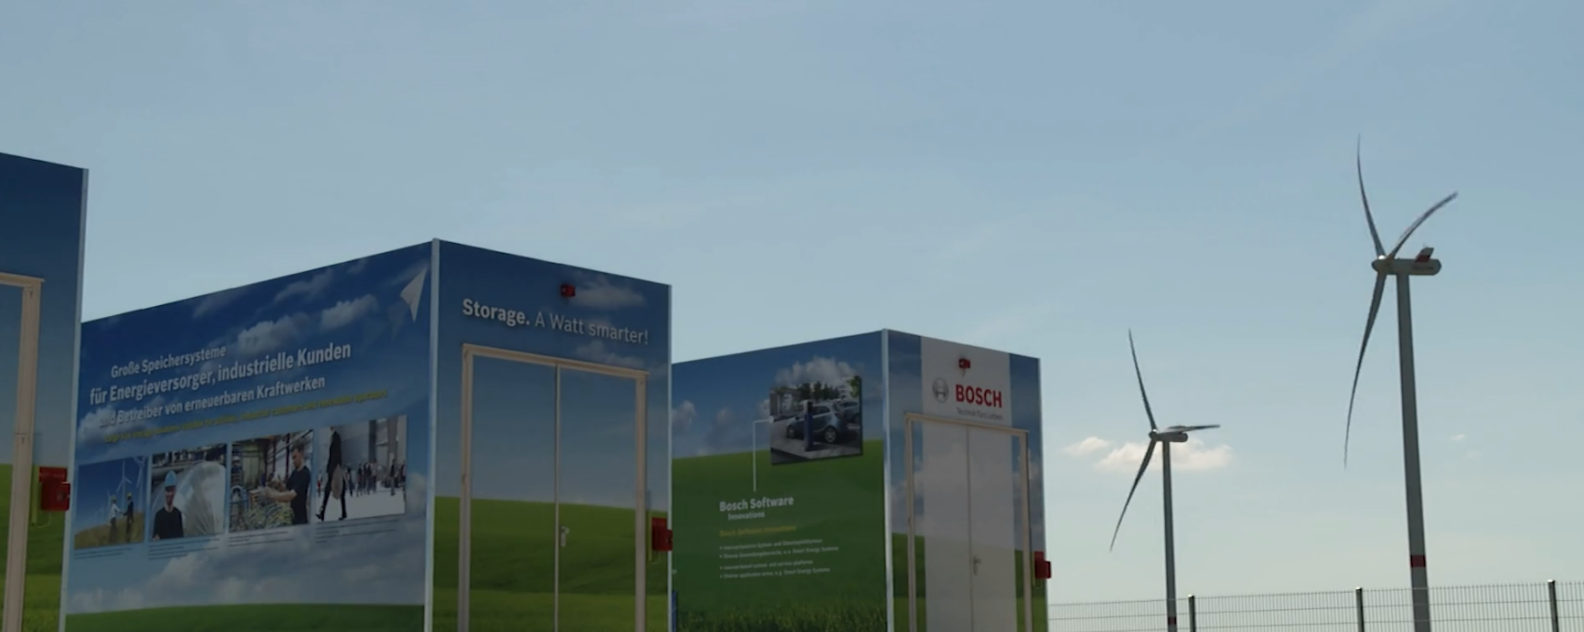 L'un des plus grands systèmes de stockage hybride d'Europe, situé dans la ville de Baderup, en Allemagne